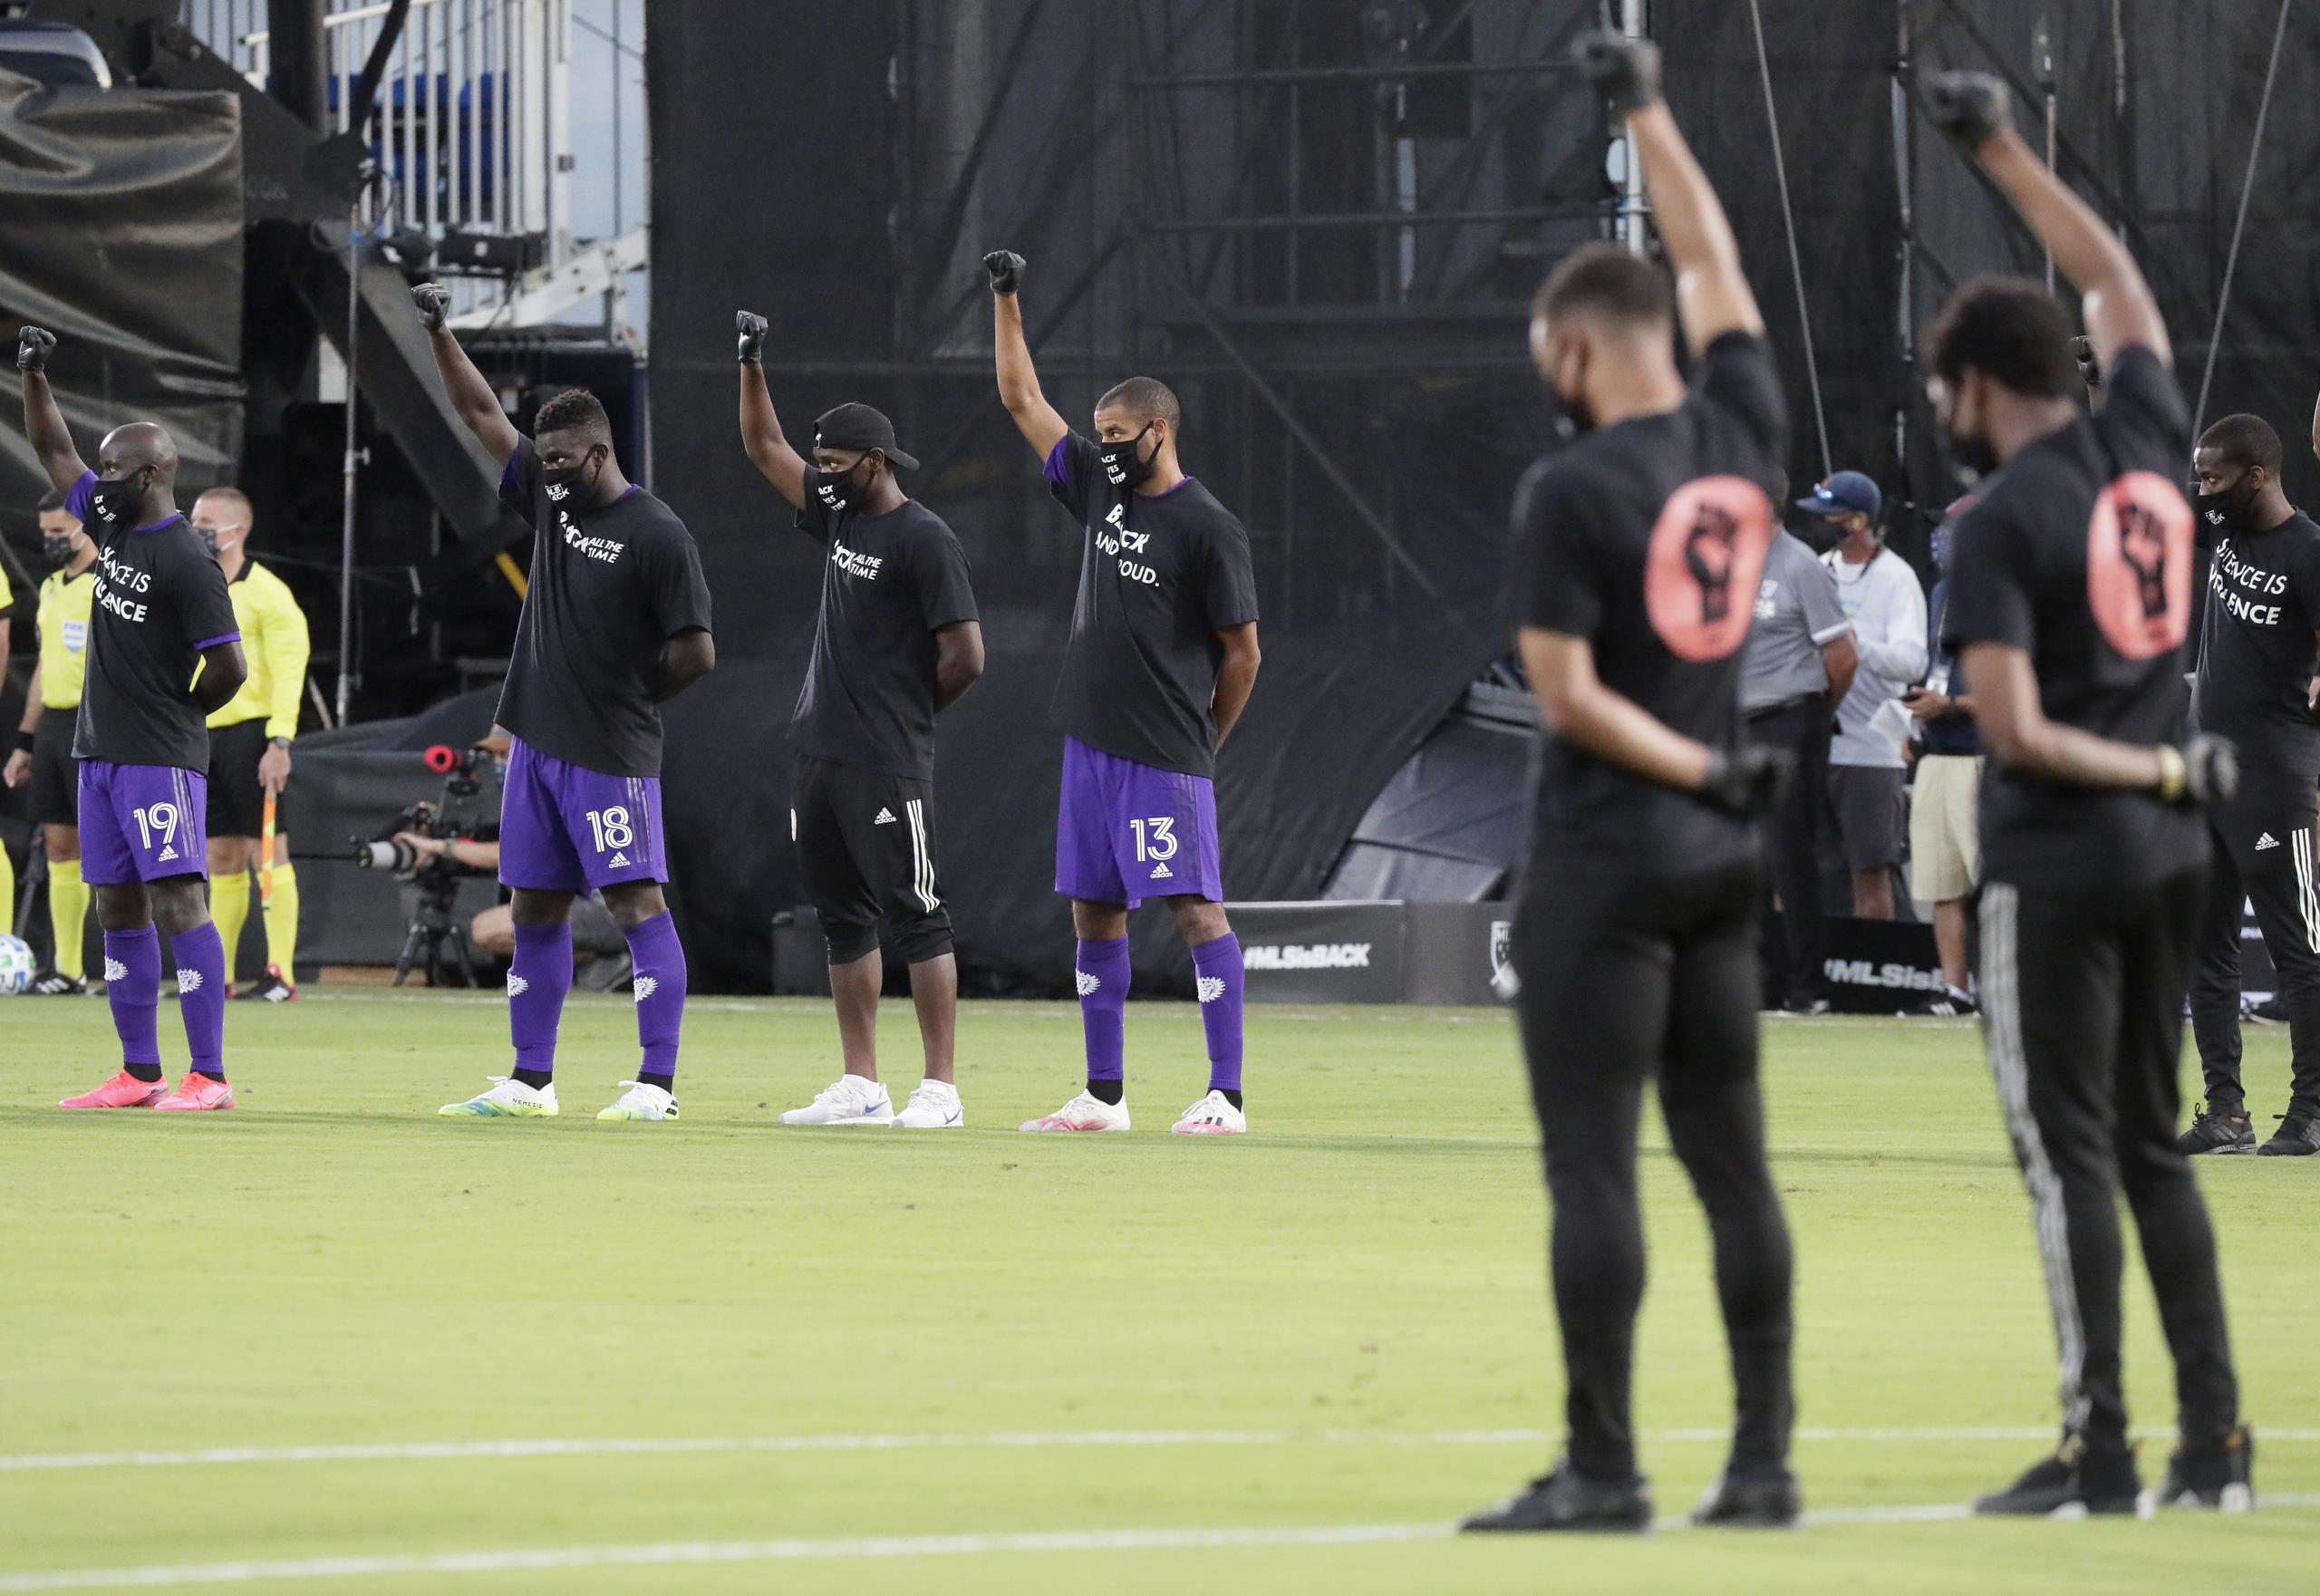 Jugadores del Orlando City (izquierda) levantan un puño como una protesta contra la injusticia social antes de poner en marcha un torneo que marca la reanudación de la actividad en la MLS, interrumpida por la pandemia de coronavirus.